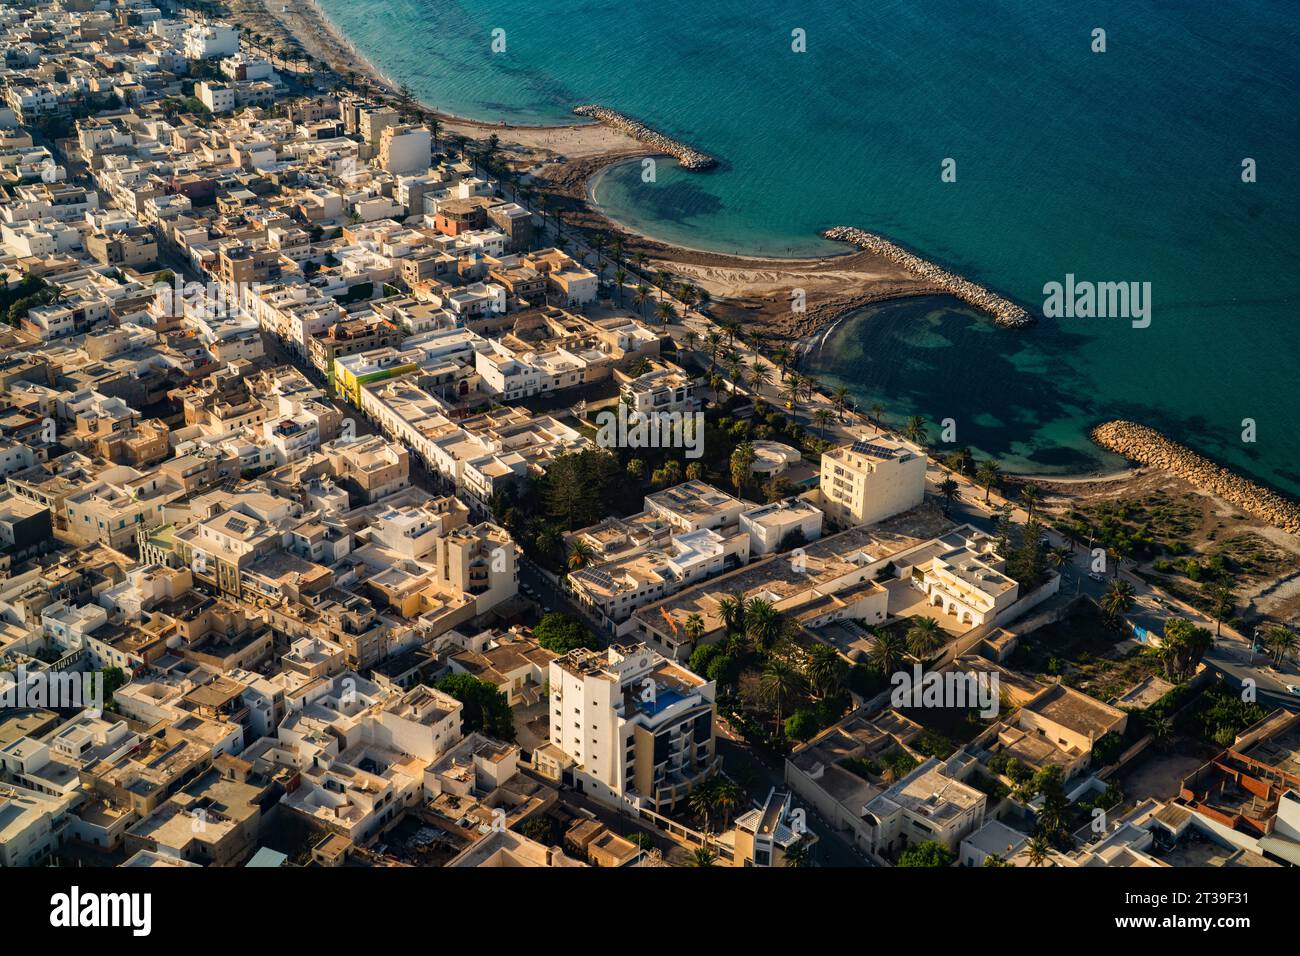 Vista aerea della costa tunisina e della città di Mahdia. Foto Stock